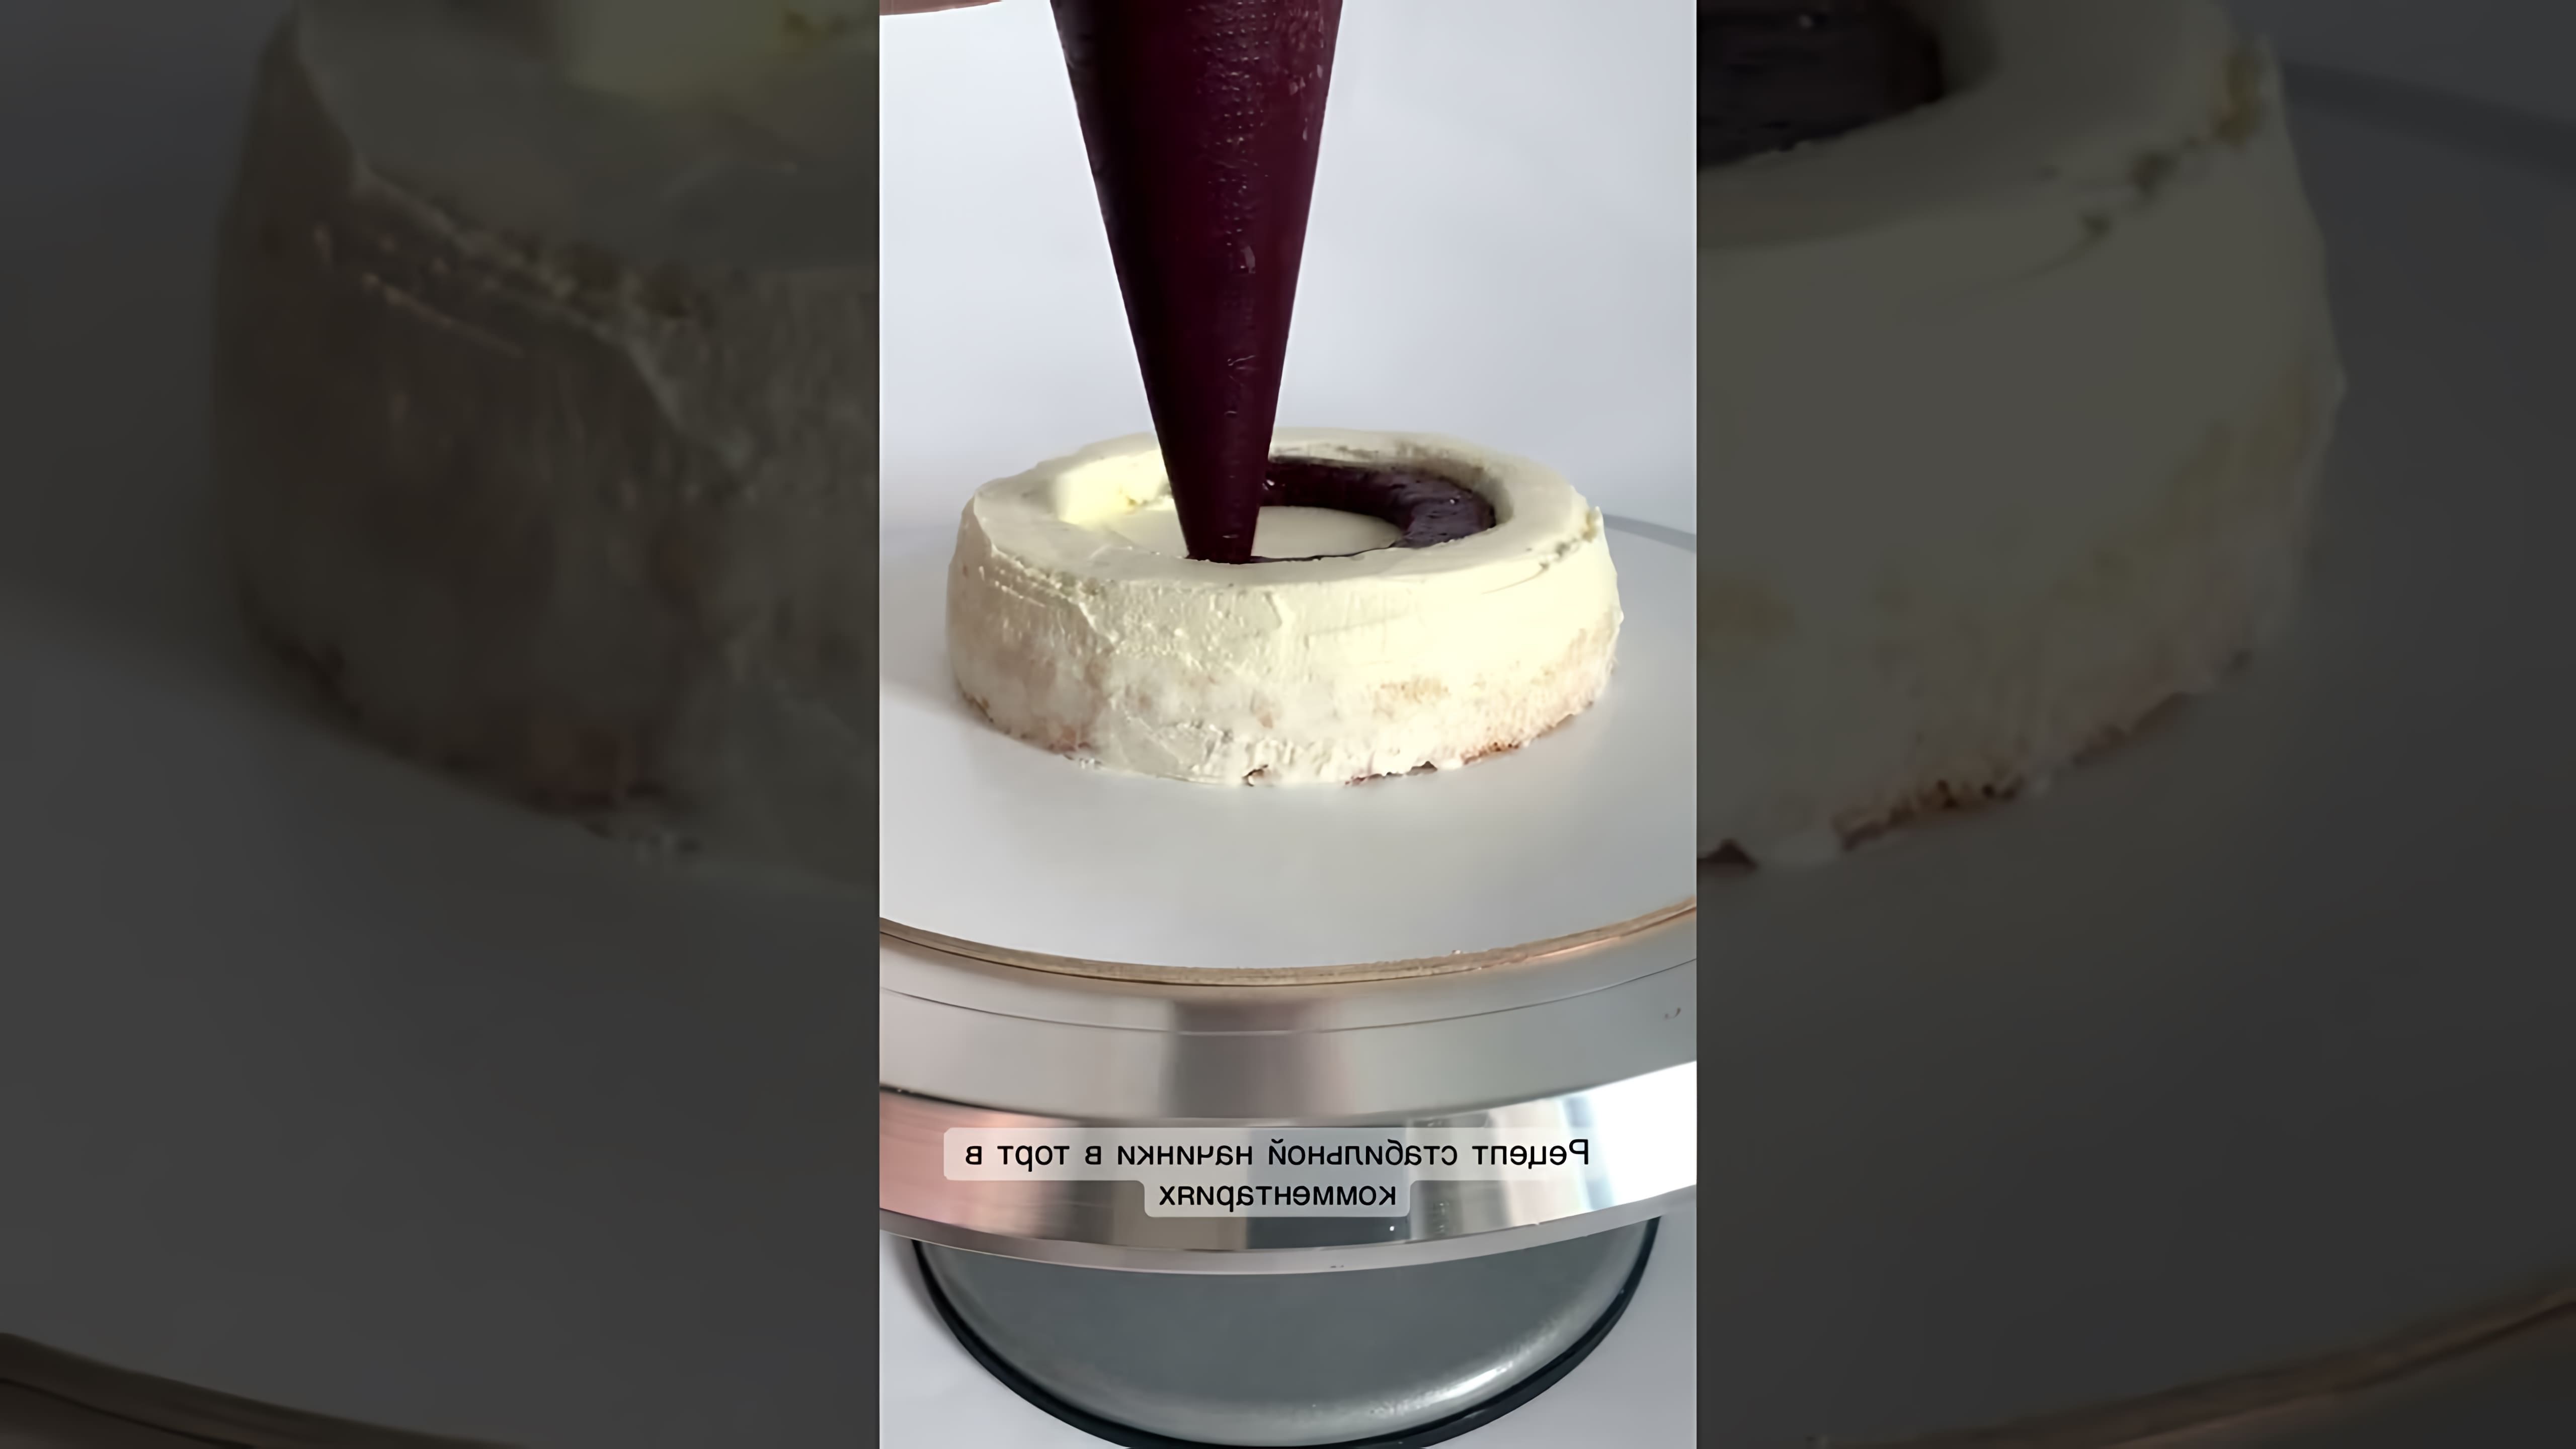 Рецепт начинки в торт 🍒 - это видео-ролик, который показывает, как приготовить вкусную и ароматную начинку для торта